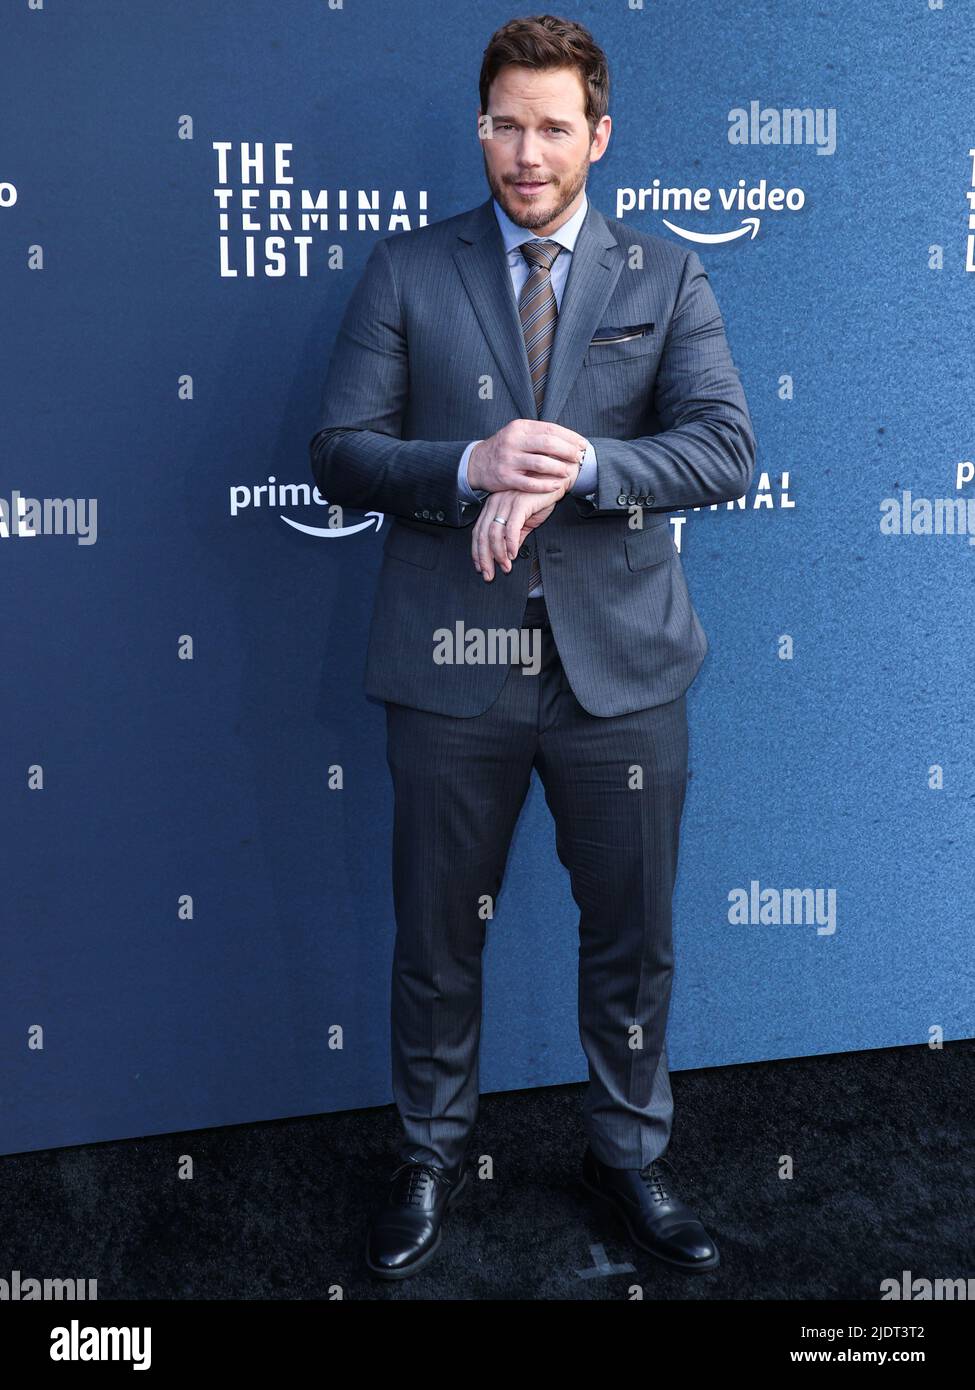 LOS ANGELES, KALIFORNIEN, USA - 22. JUNI: Der amerikanische Schauspieler  Chris Pratt kommt bei der Los Angeles Premiere von Amazon Prime Videos "The  Terminal List" Saison 1 an, die am 22. Juni